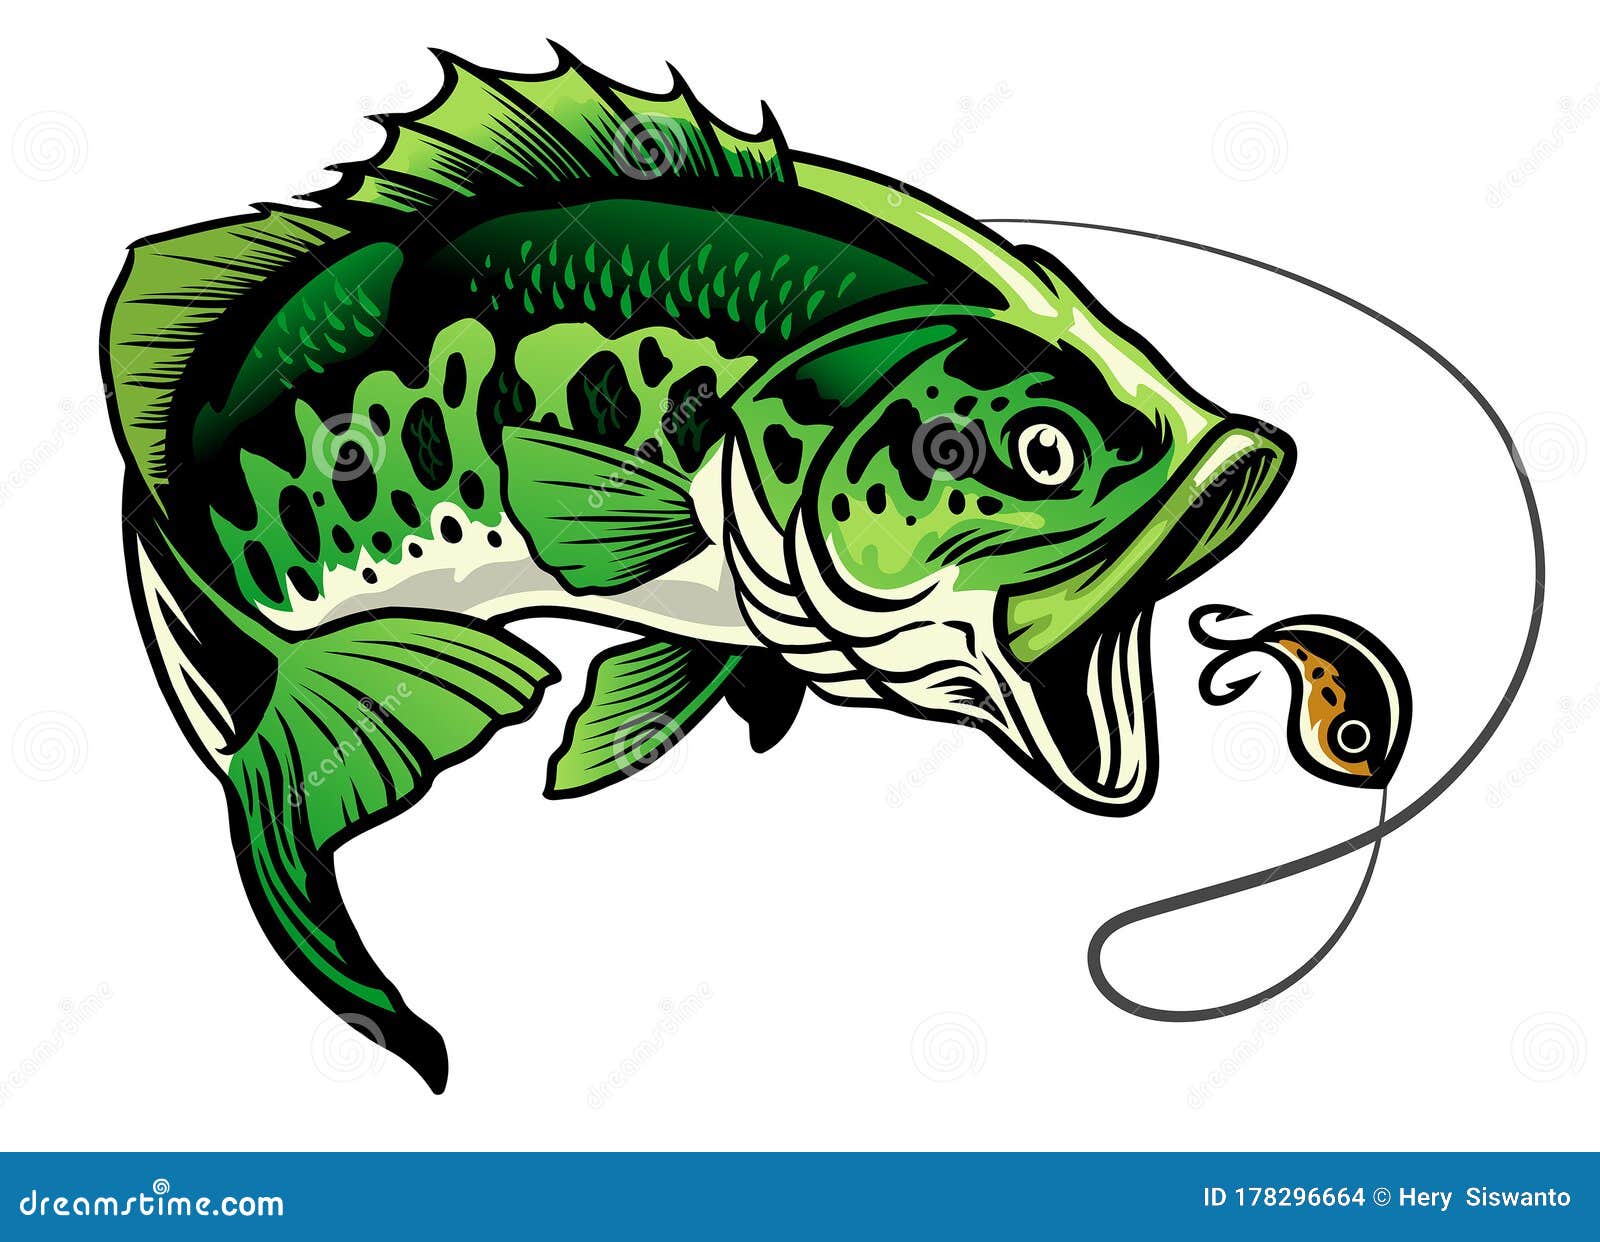 Bass Fishing Lure Stock Illustrations – 3,885 Bass Fishing Lure